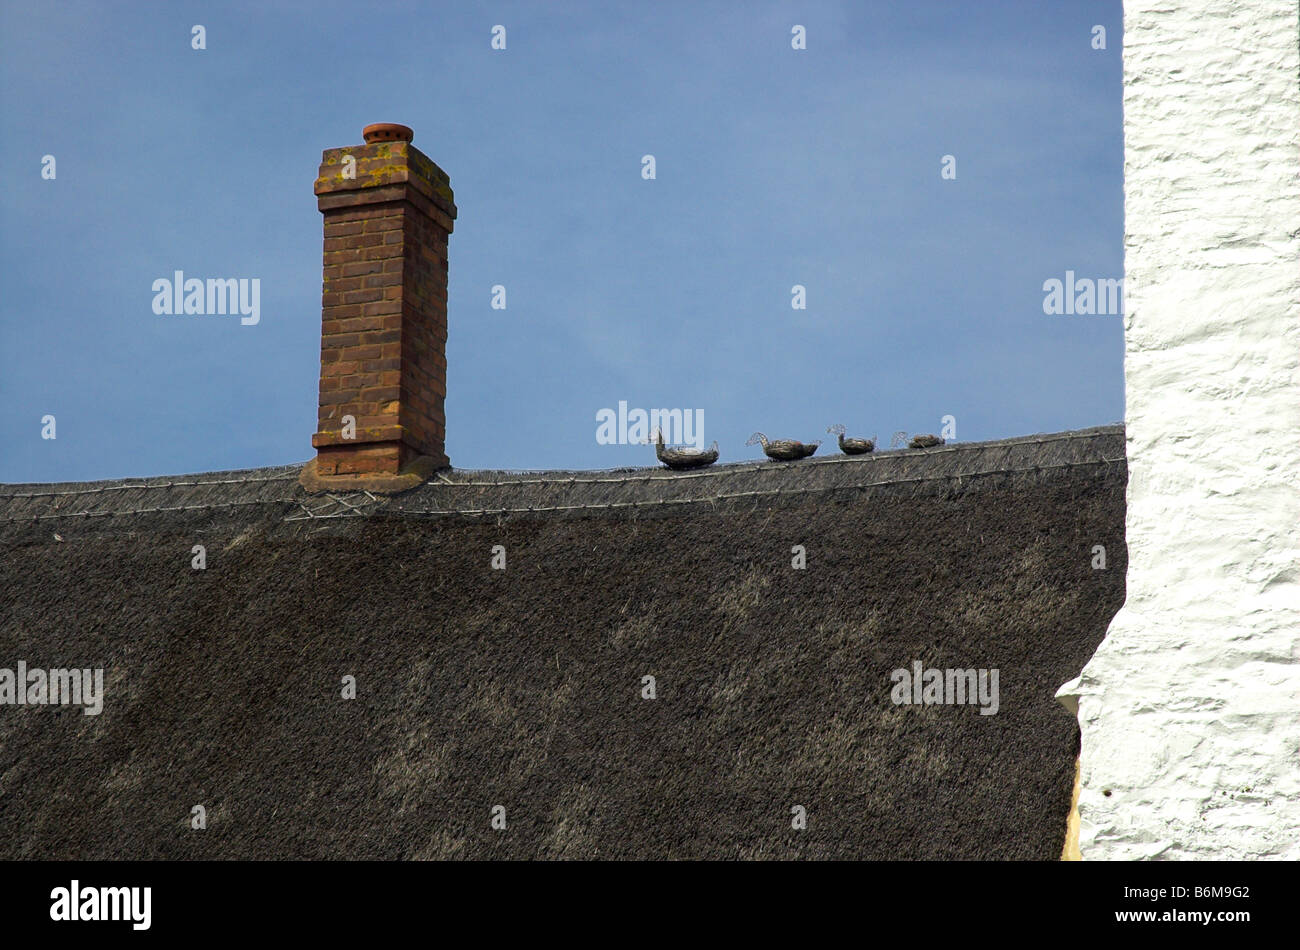 Une ligne de canards fait de chaume sur le toit d'une chaumière en Angleterre Banque D'Images